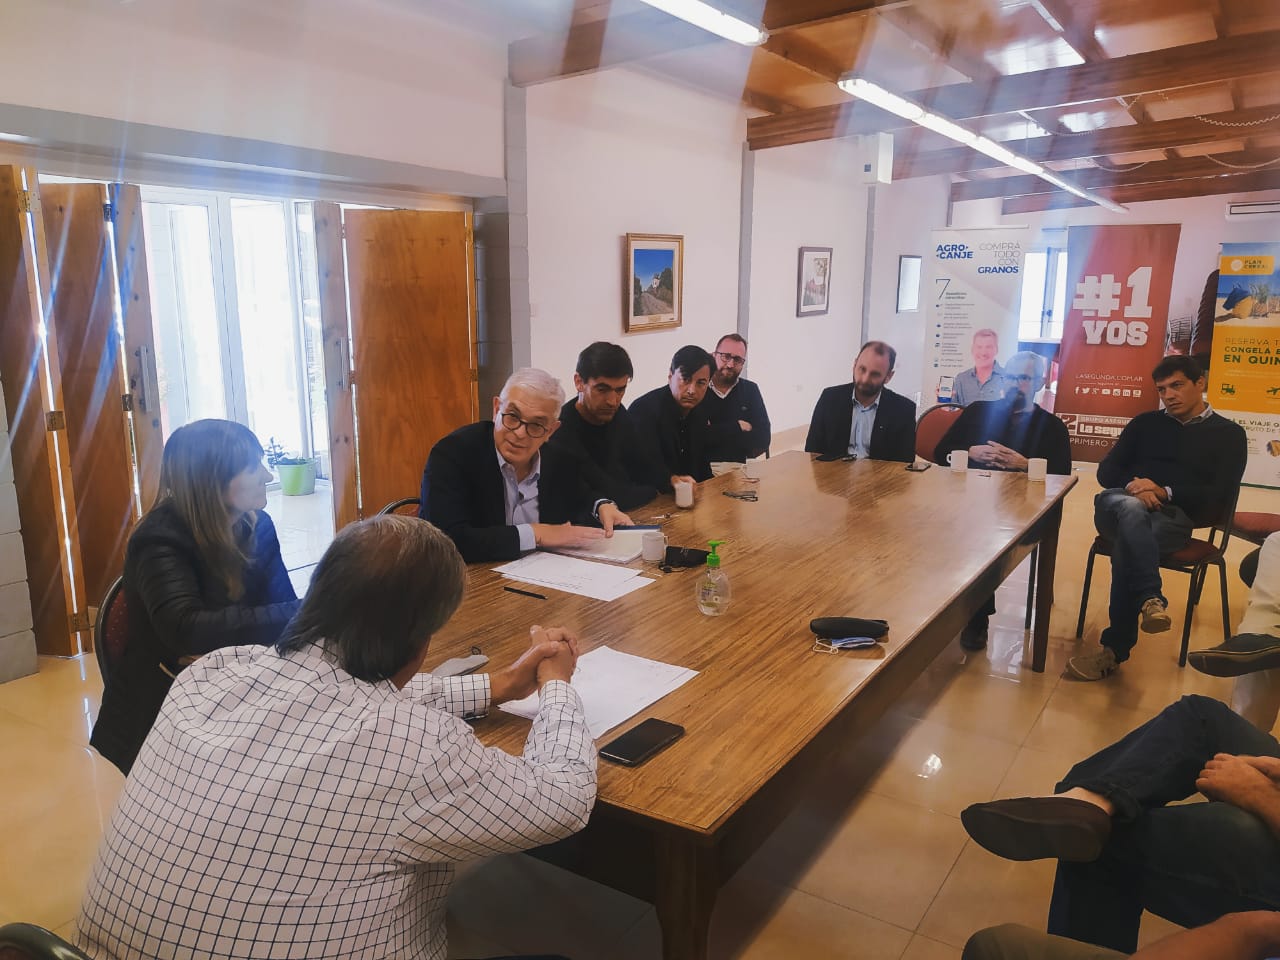 El Ministro Domínguez declarará de “interés prioritario” la planta de producción de mozzarella con perfil exportador que se instalará en Tandil